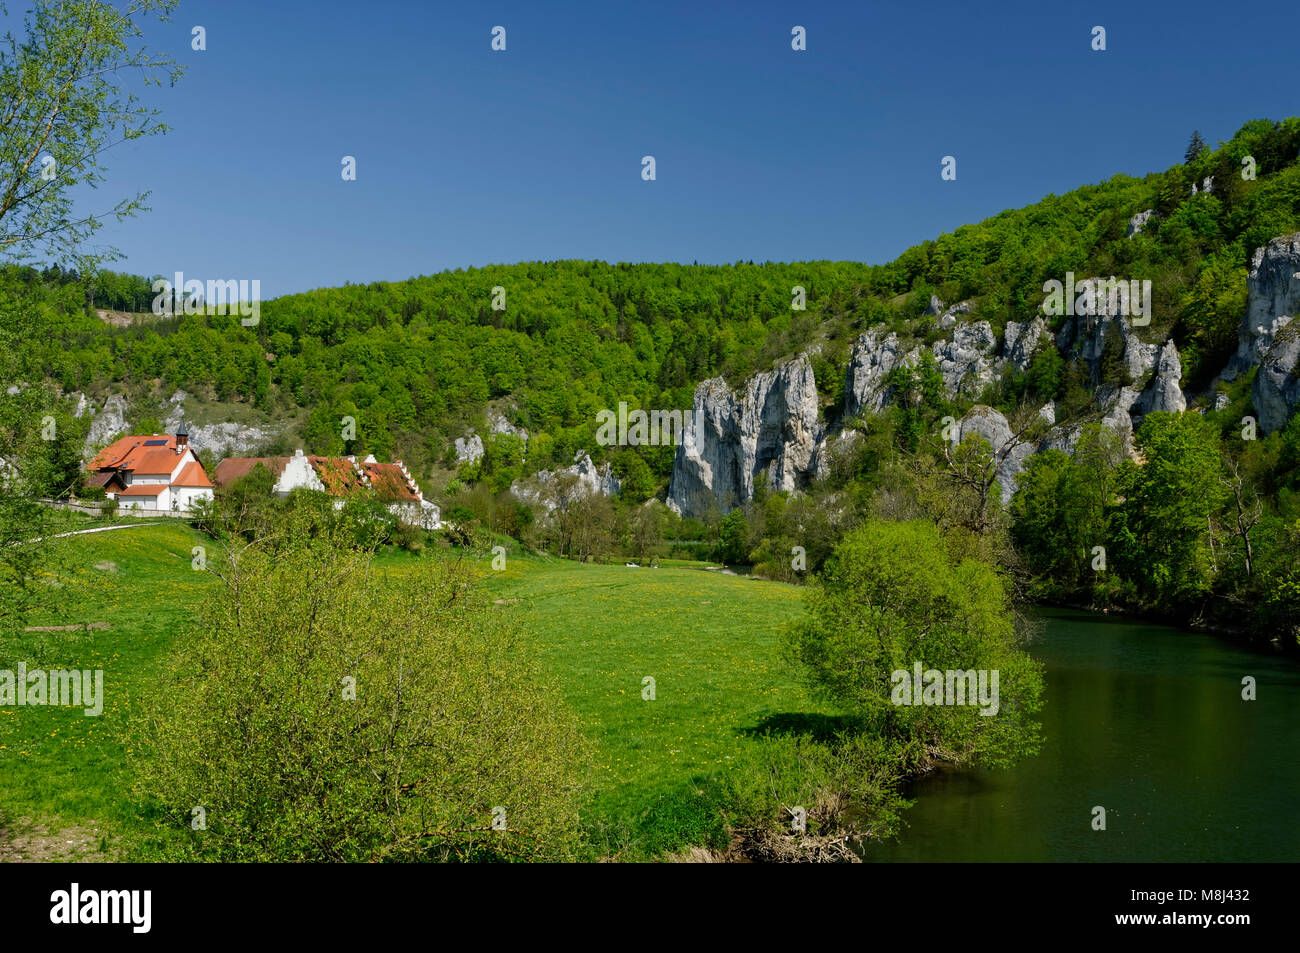 Oberes Donautal (Haute vallée du Danube) près de Thiergarten (Beuron), district de Sigmaringen, Bade-Wurtemberg, Allemagne Banque D'Images